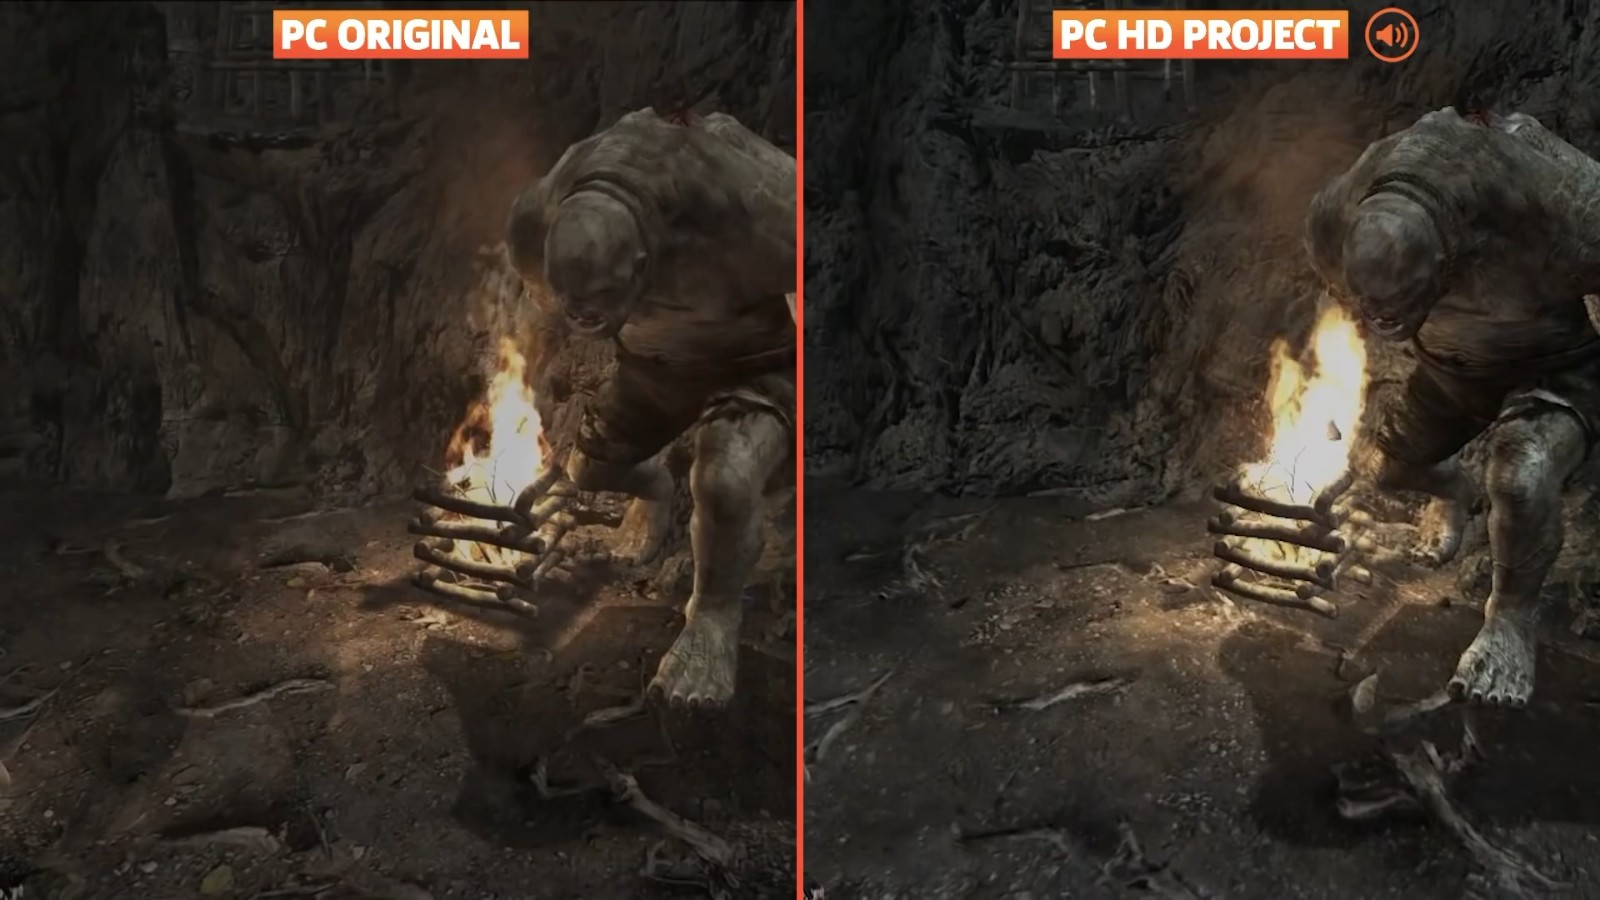 《生化危機4》高清畫質MOD對比PC原版效果演示